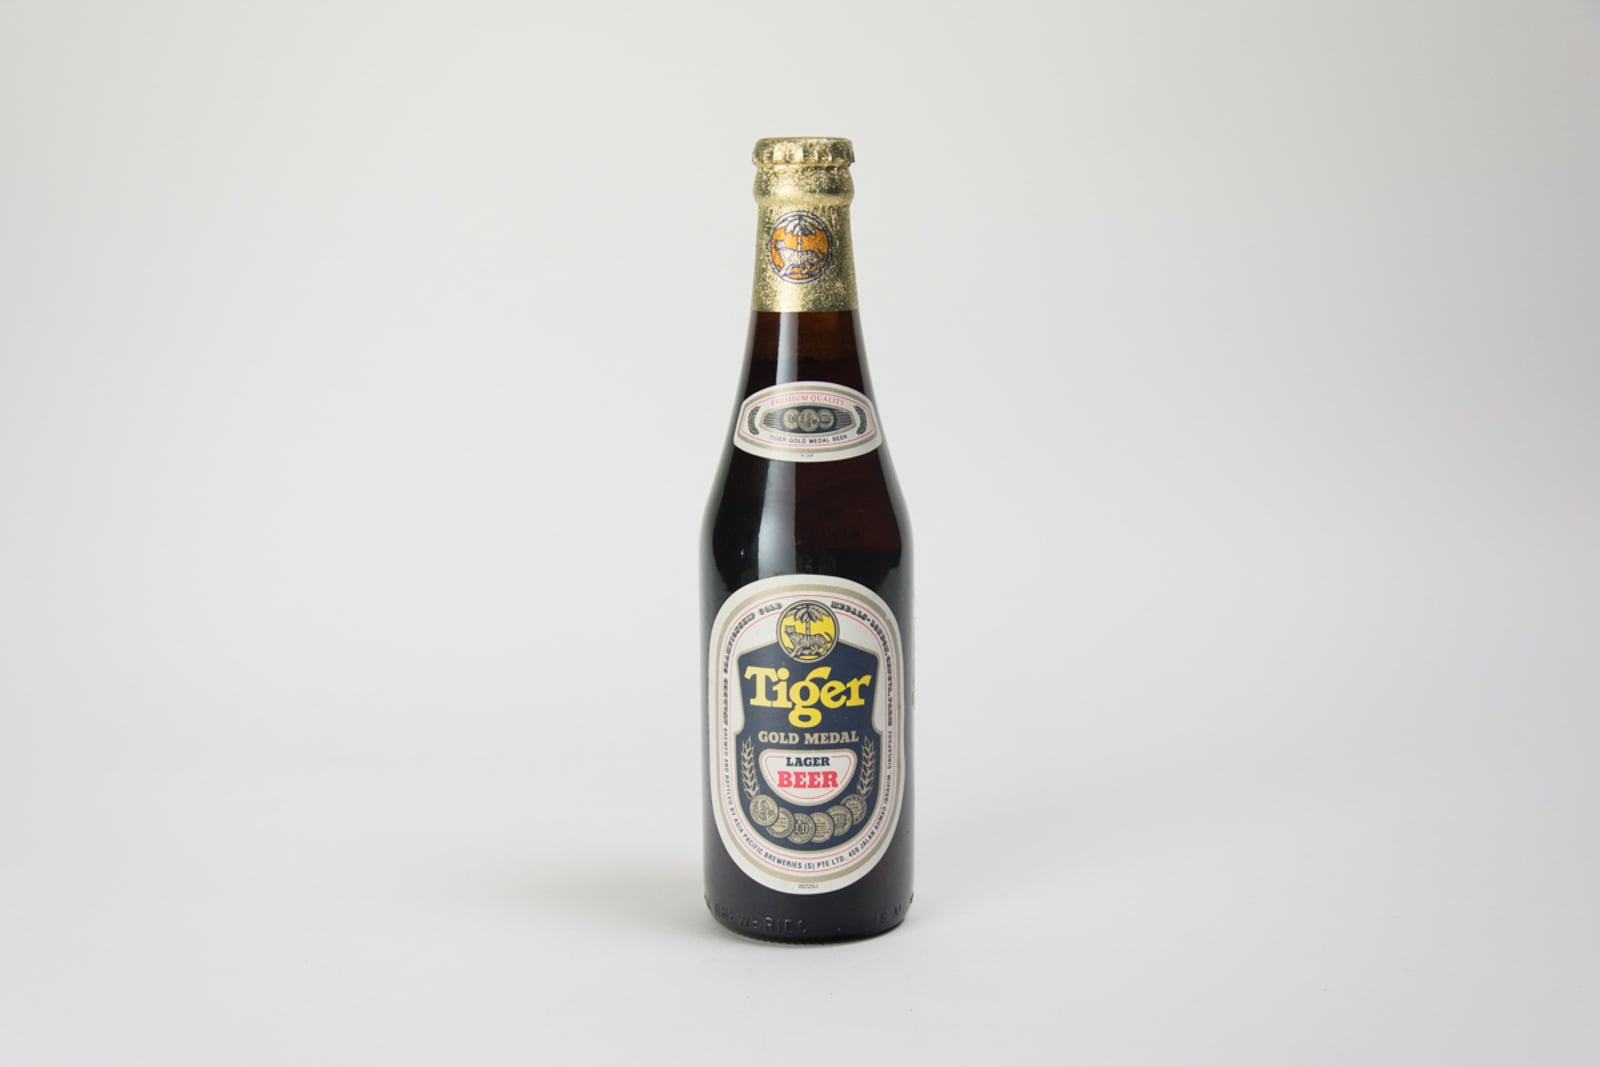 Tiger Gold Medal Lager Beer Bottle (Taiwan)